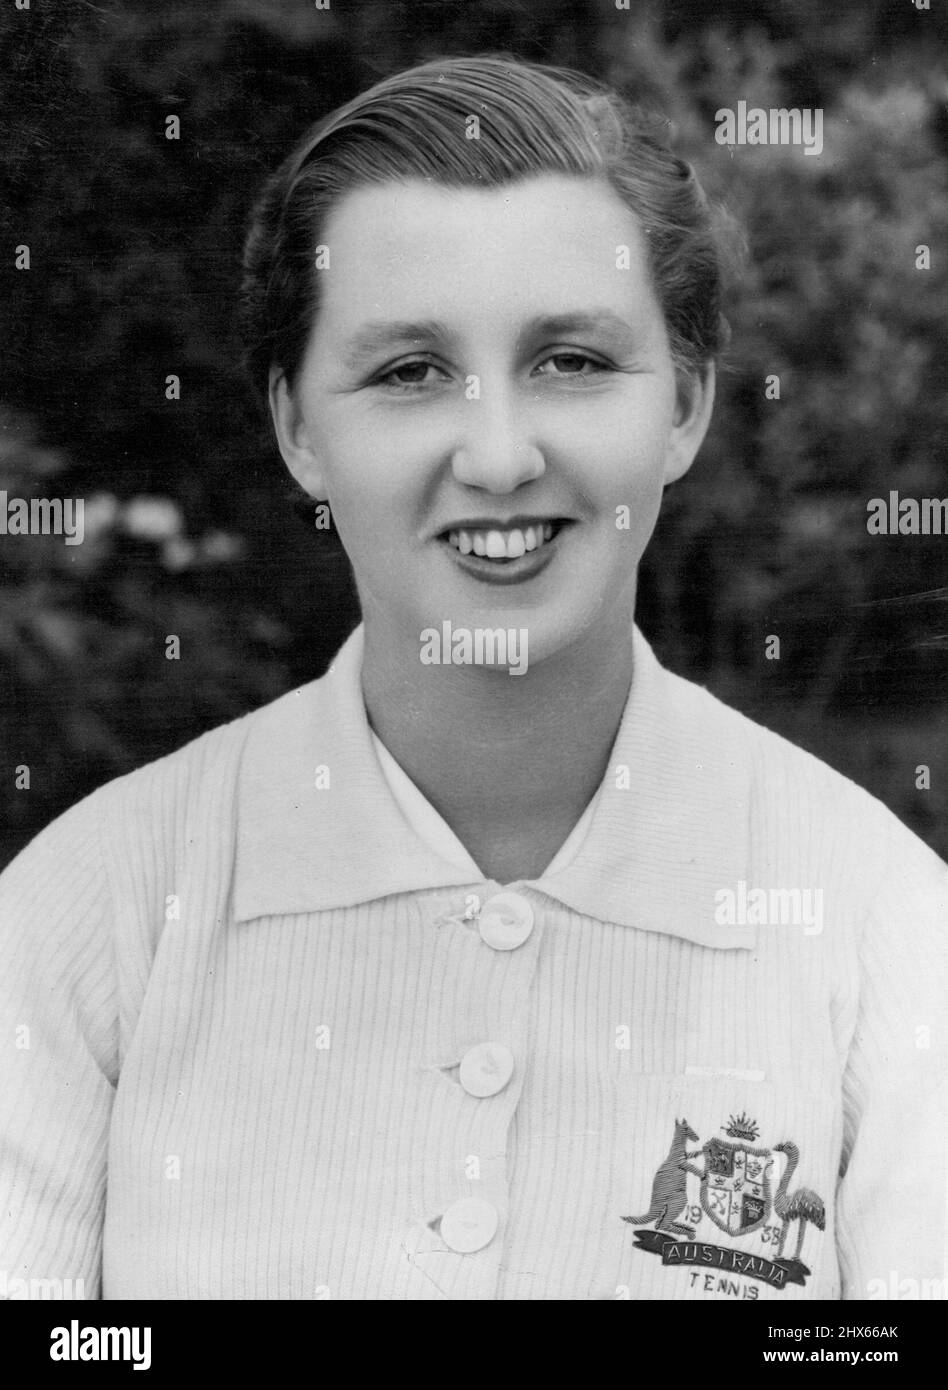 Australiens Nr. 1. Rasentennisspielerin: Neue Studie von Miss Nancye Wynne, Australiens Nummer 1. Rasentennisspieler, der hier anwesend ist und in dieser Saison an den Hauptspielen teilnimmt, und beabsichtigt, einen guten Kampf um den englischen Titel zu führen, wenn Wimbledon am 20.. Juni eröffnet wird. 23.Mai 1938. Stockfoto